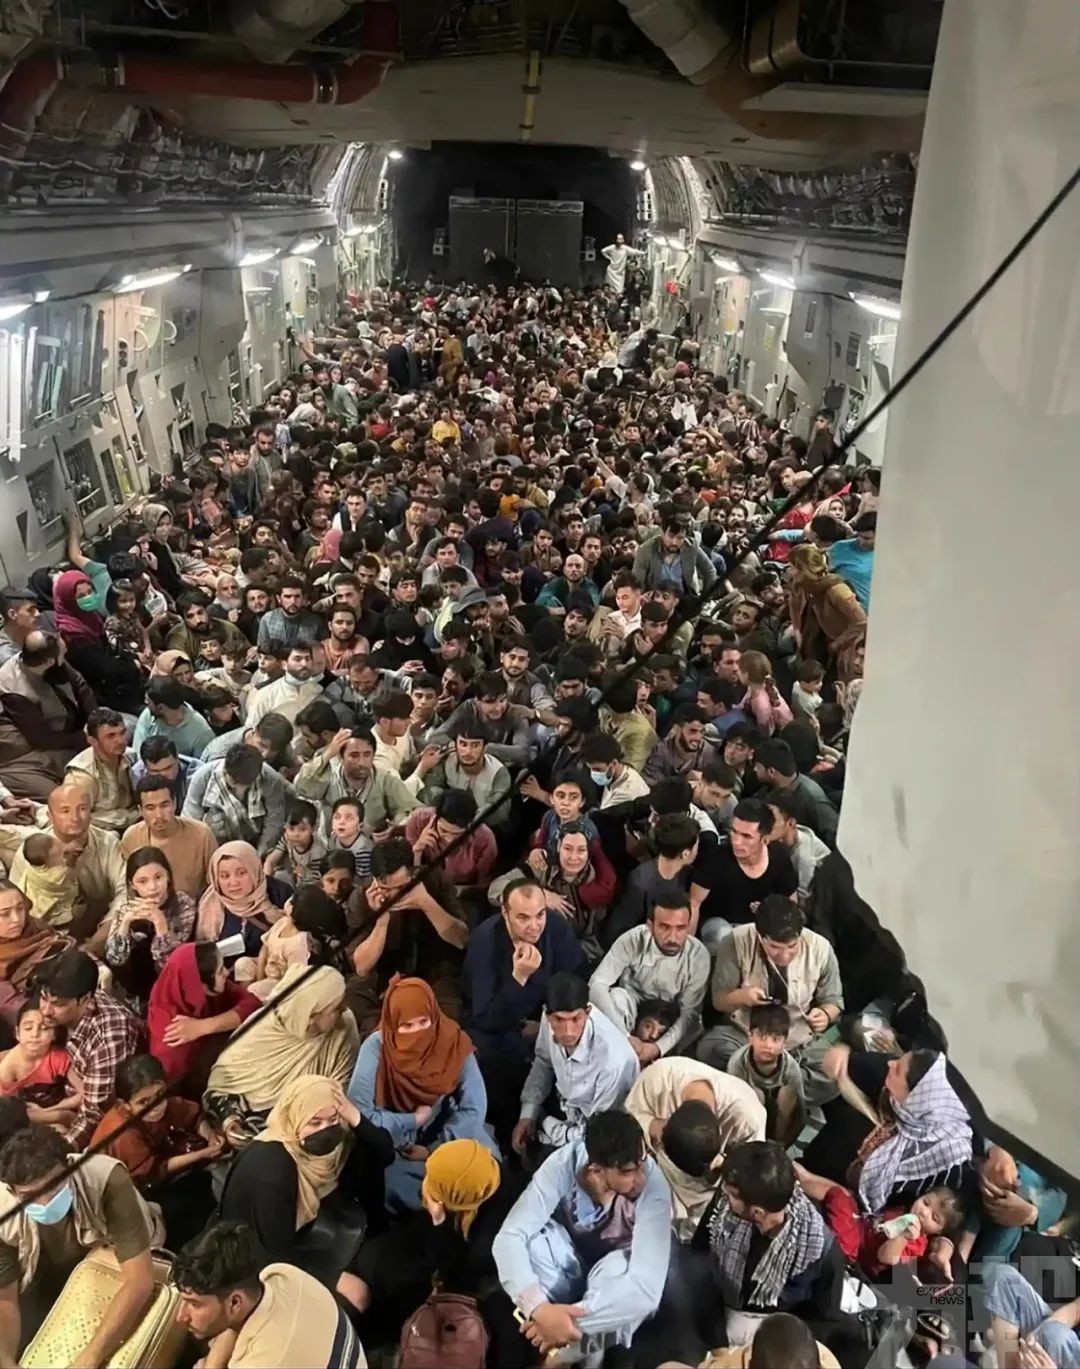 阿富汗640難民硬擠美運輸機畫面曝光